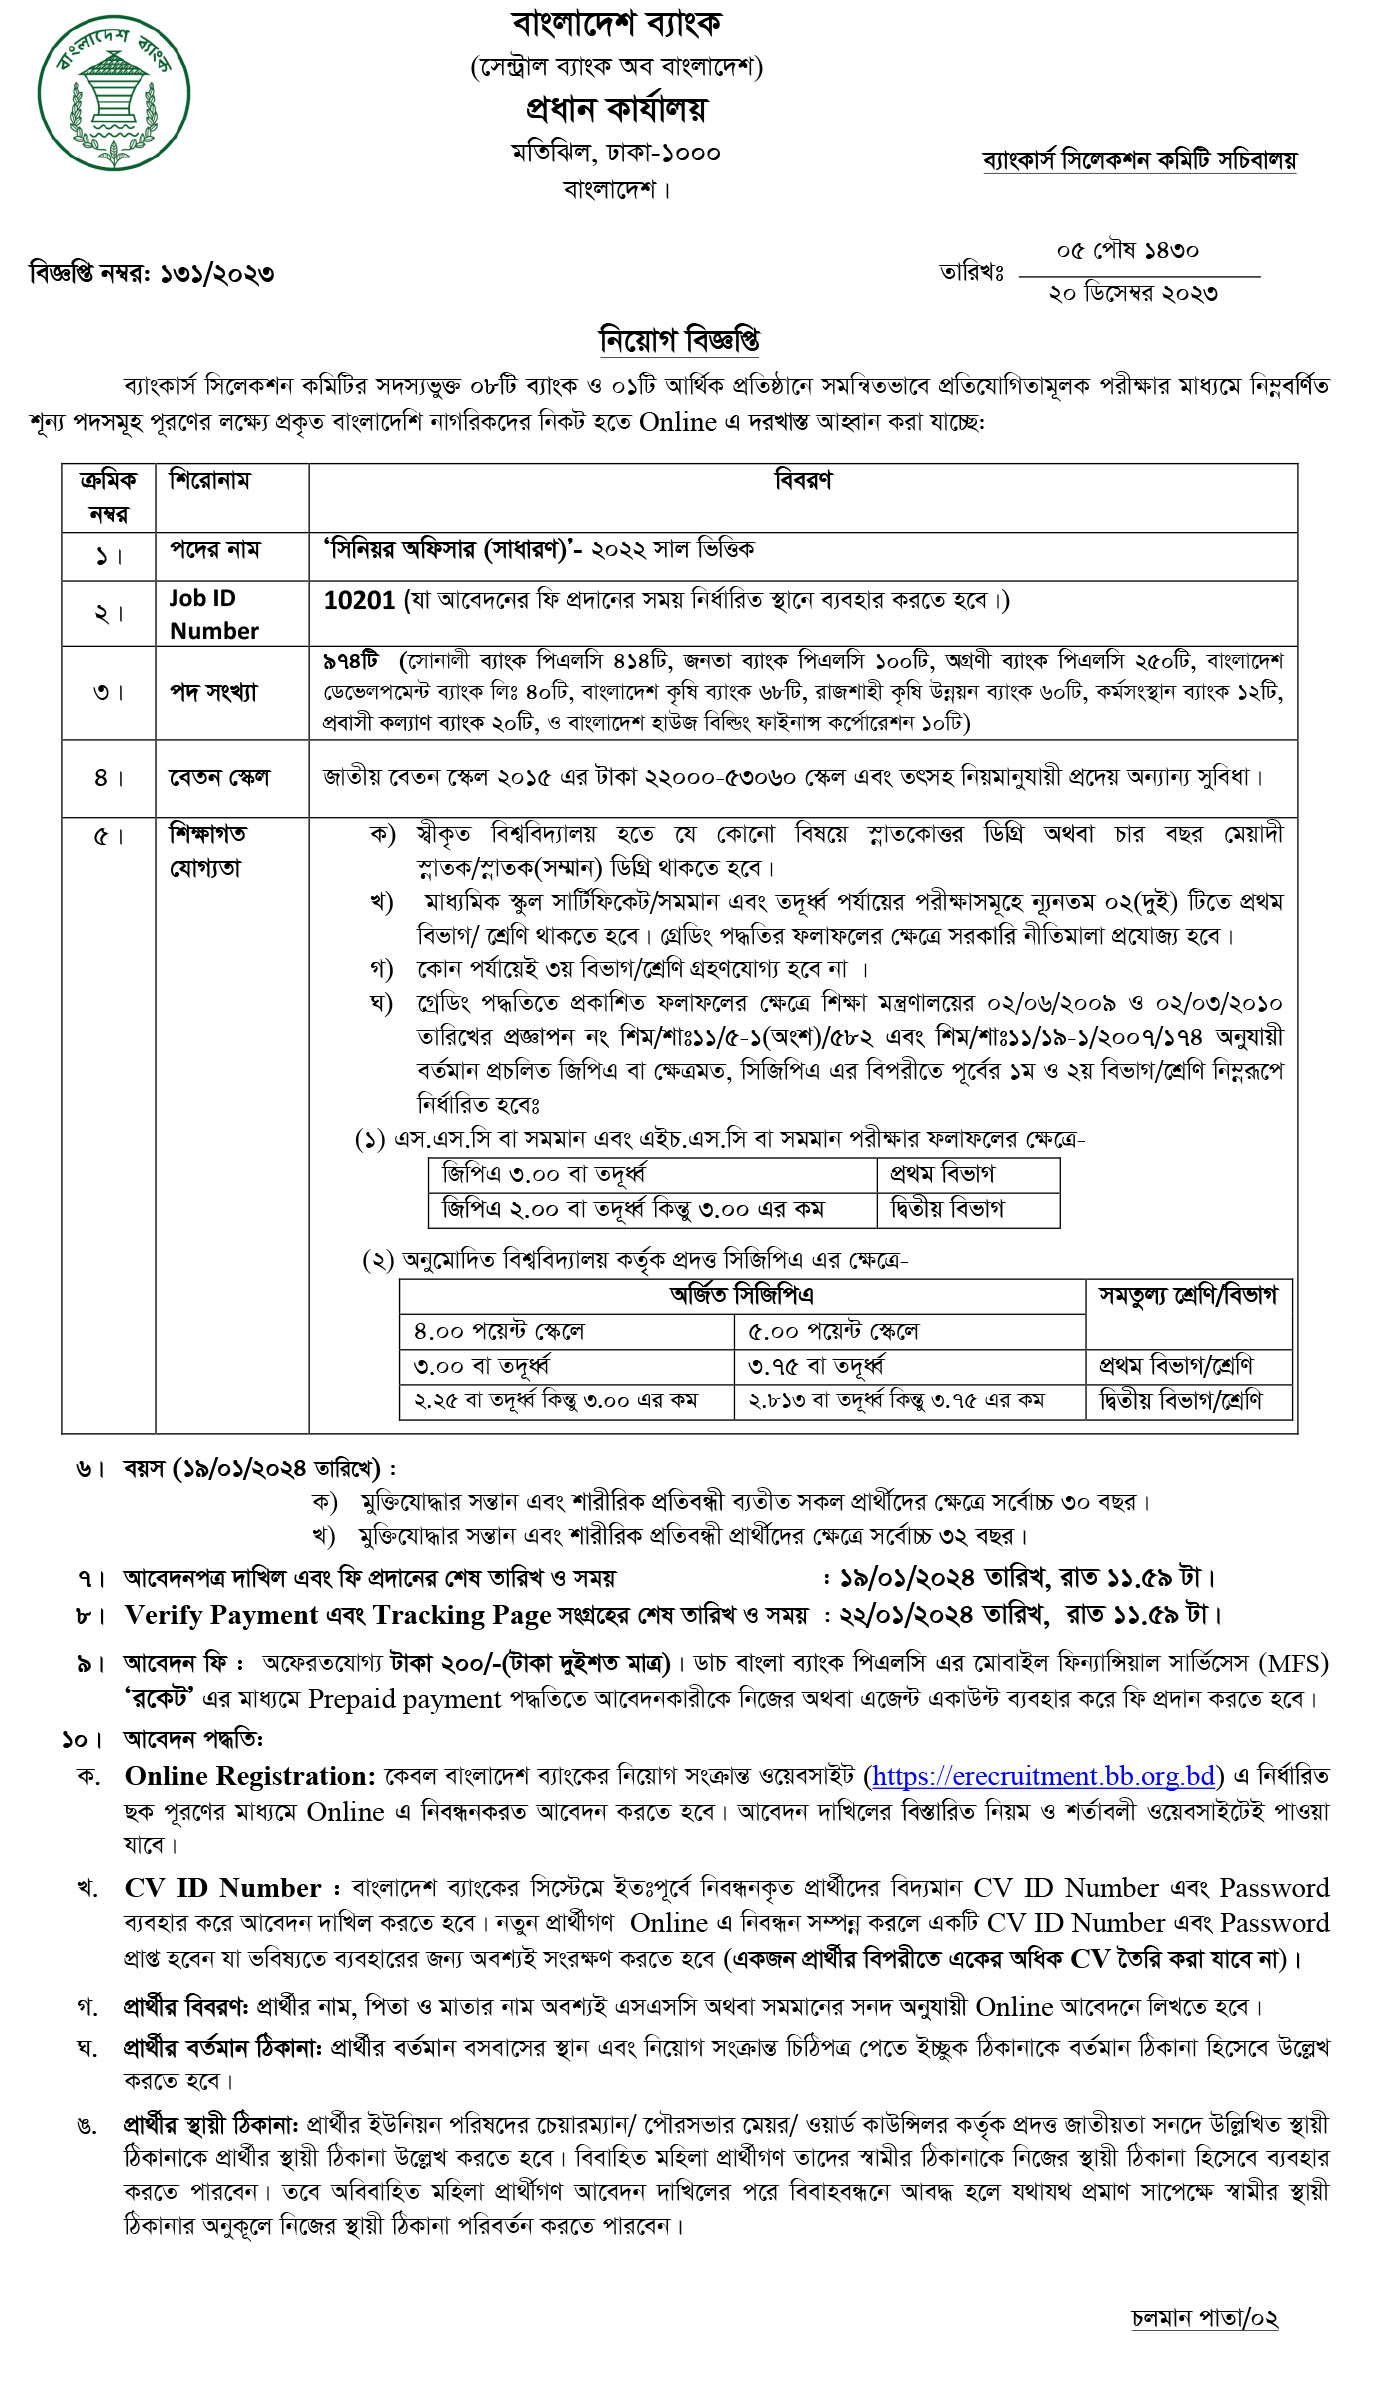 Official Image of Bangladesh Bank Job Circular 2024.